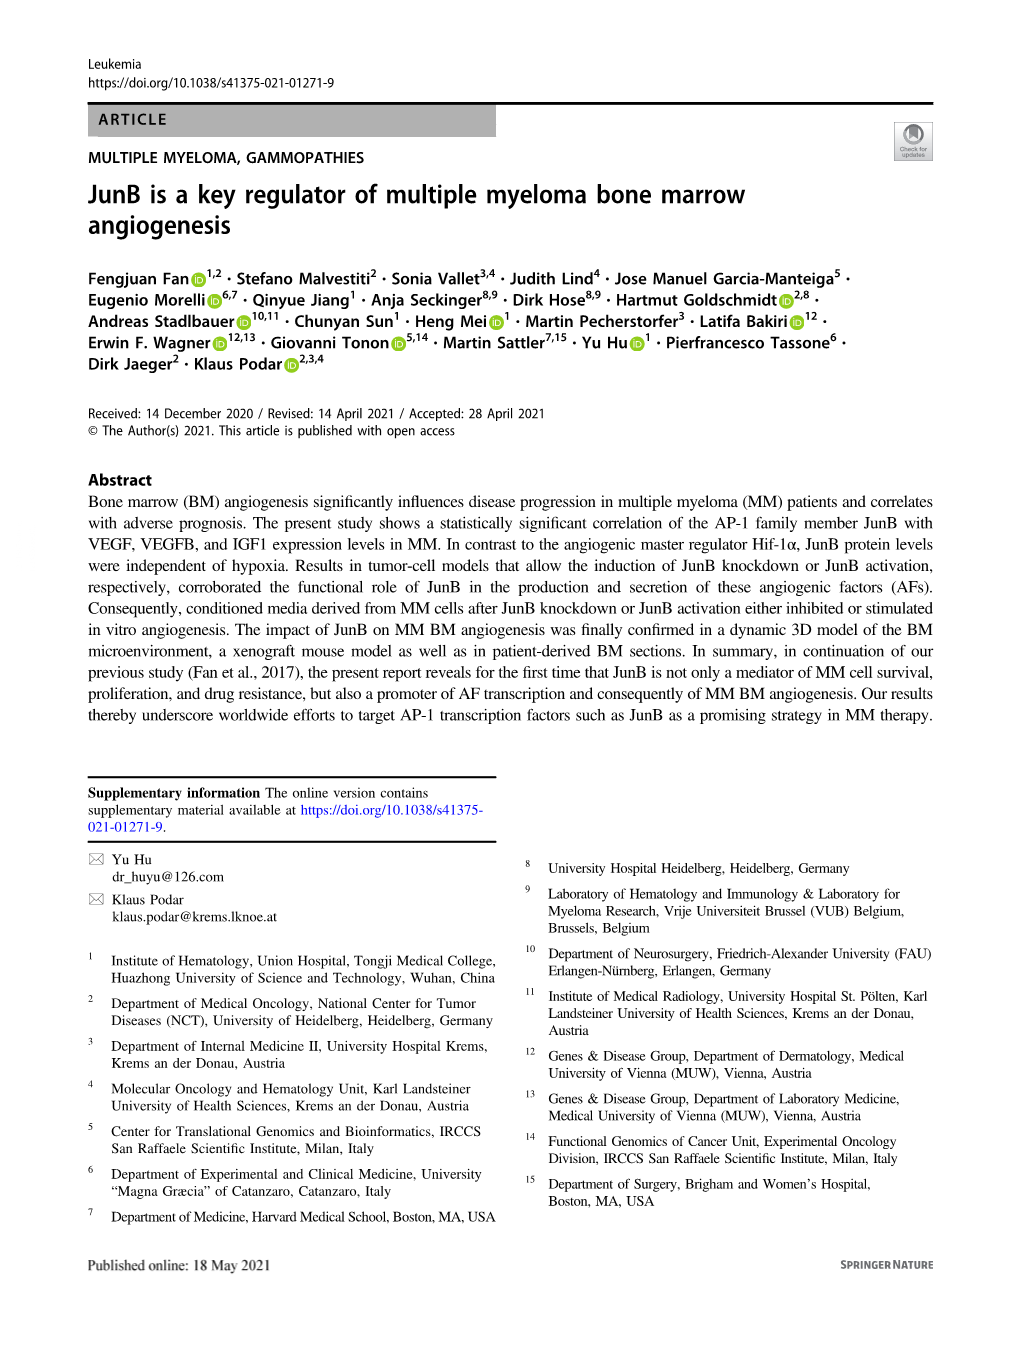 Junb Is a Key Regulator of Multiple Myeloma Bone Marrow Angiogenesis